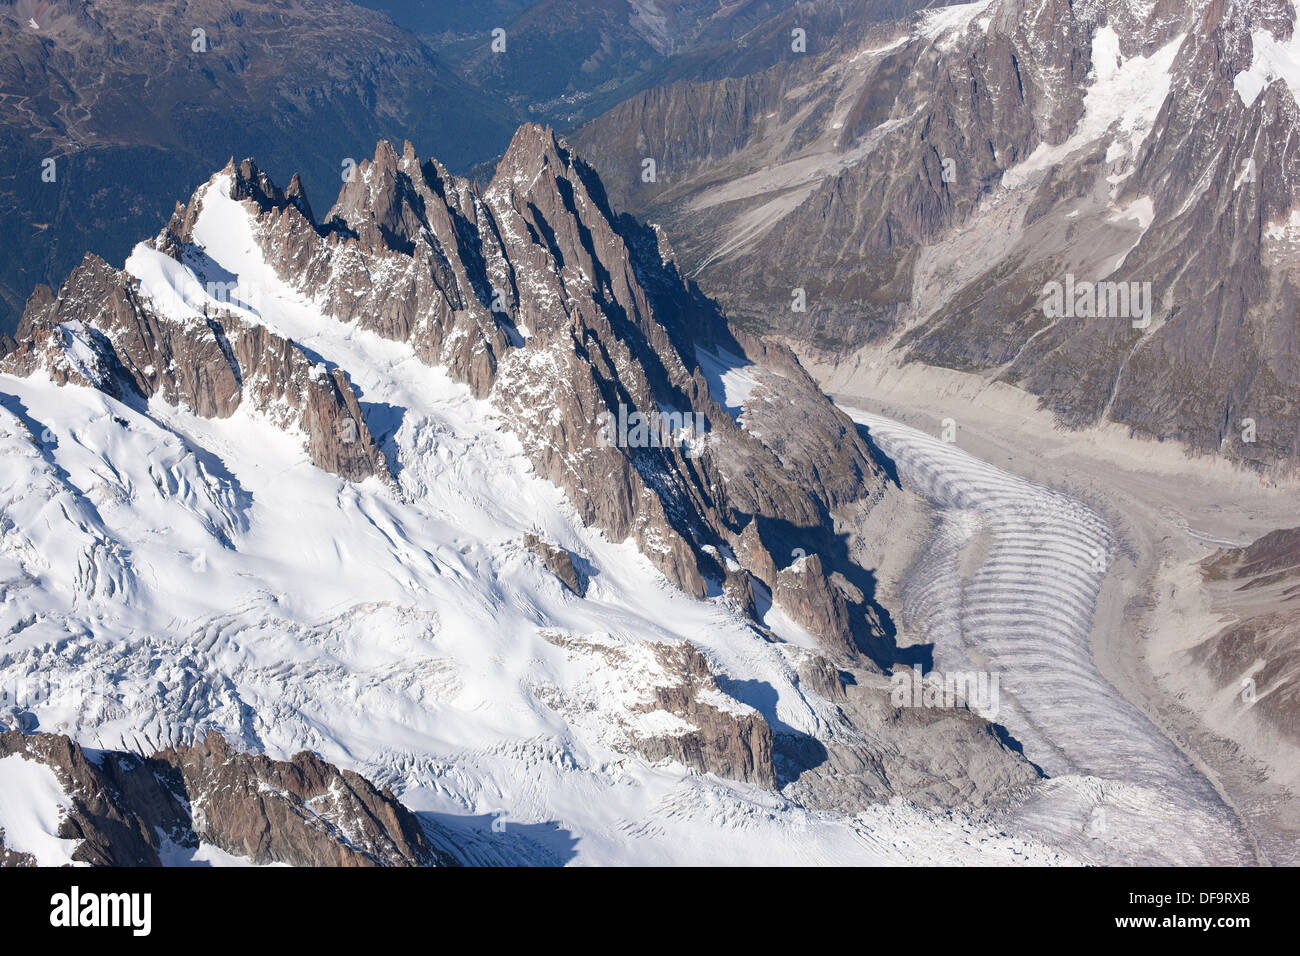 VUE AÉRIENNE.Plan, Blaitière, et Grépon pics avec Vallée Blanche (en bas à gauche) et Mer de glace (en bas à droite).Chamonix Mont-blanc, France. Banque D'Images